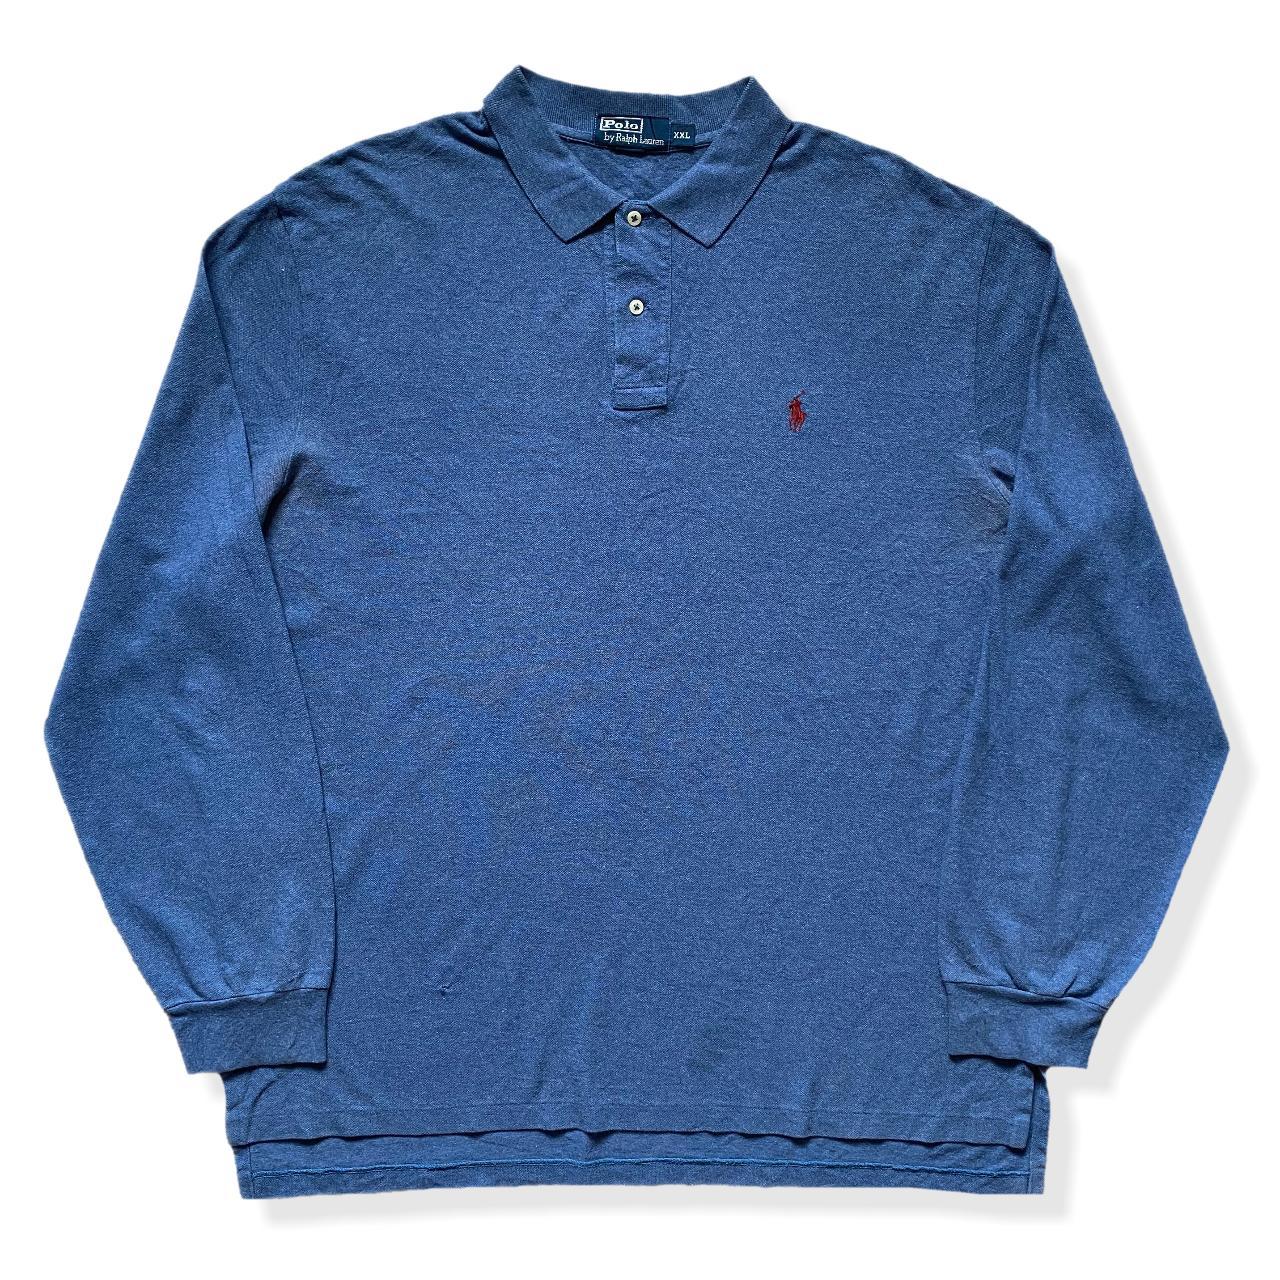 Vintage Ralph Lauren Polo Shirt 👼🏻 90s Ralph... - Depop